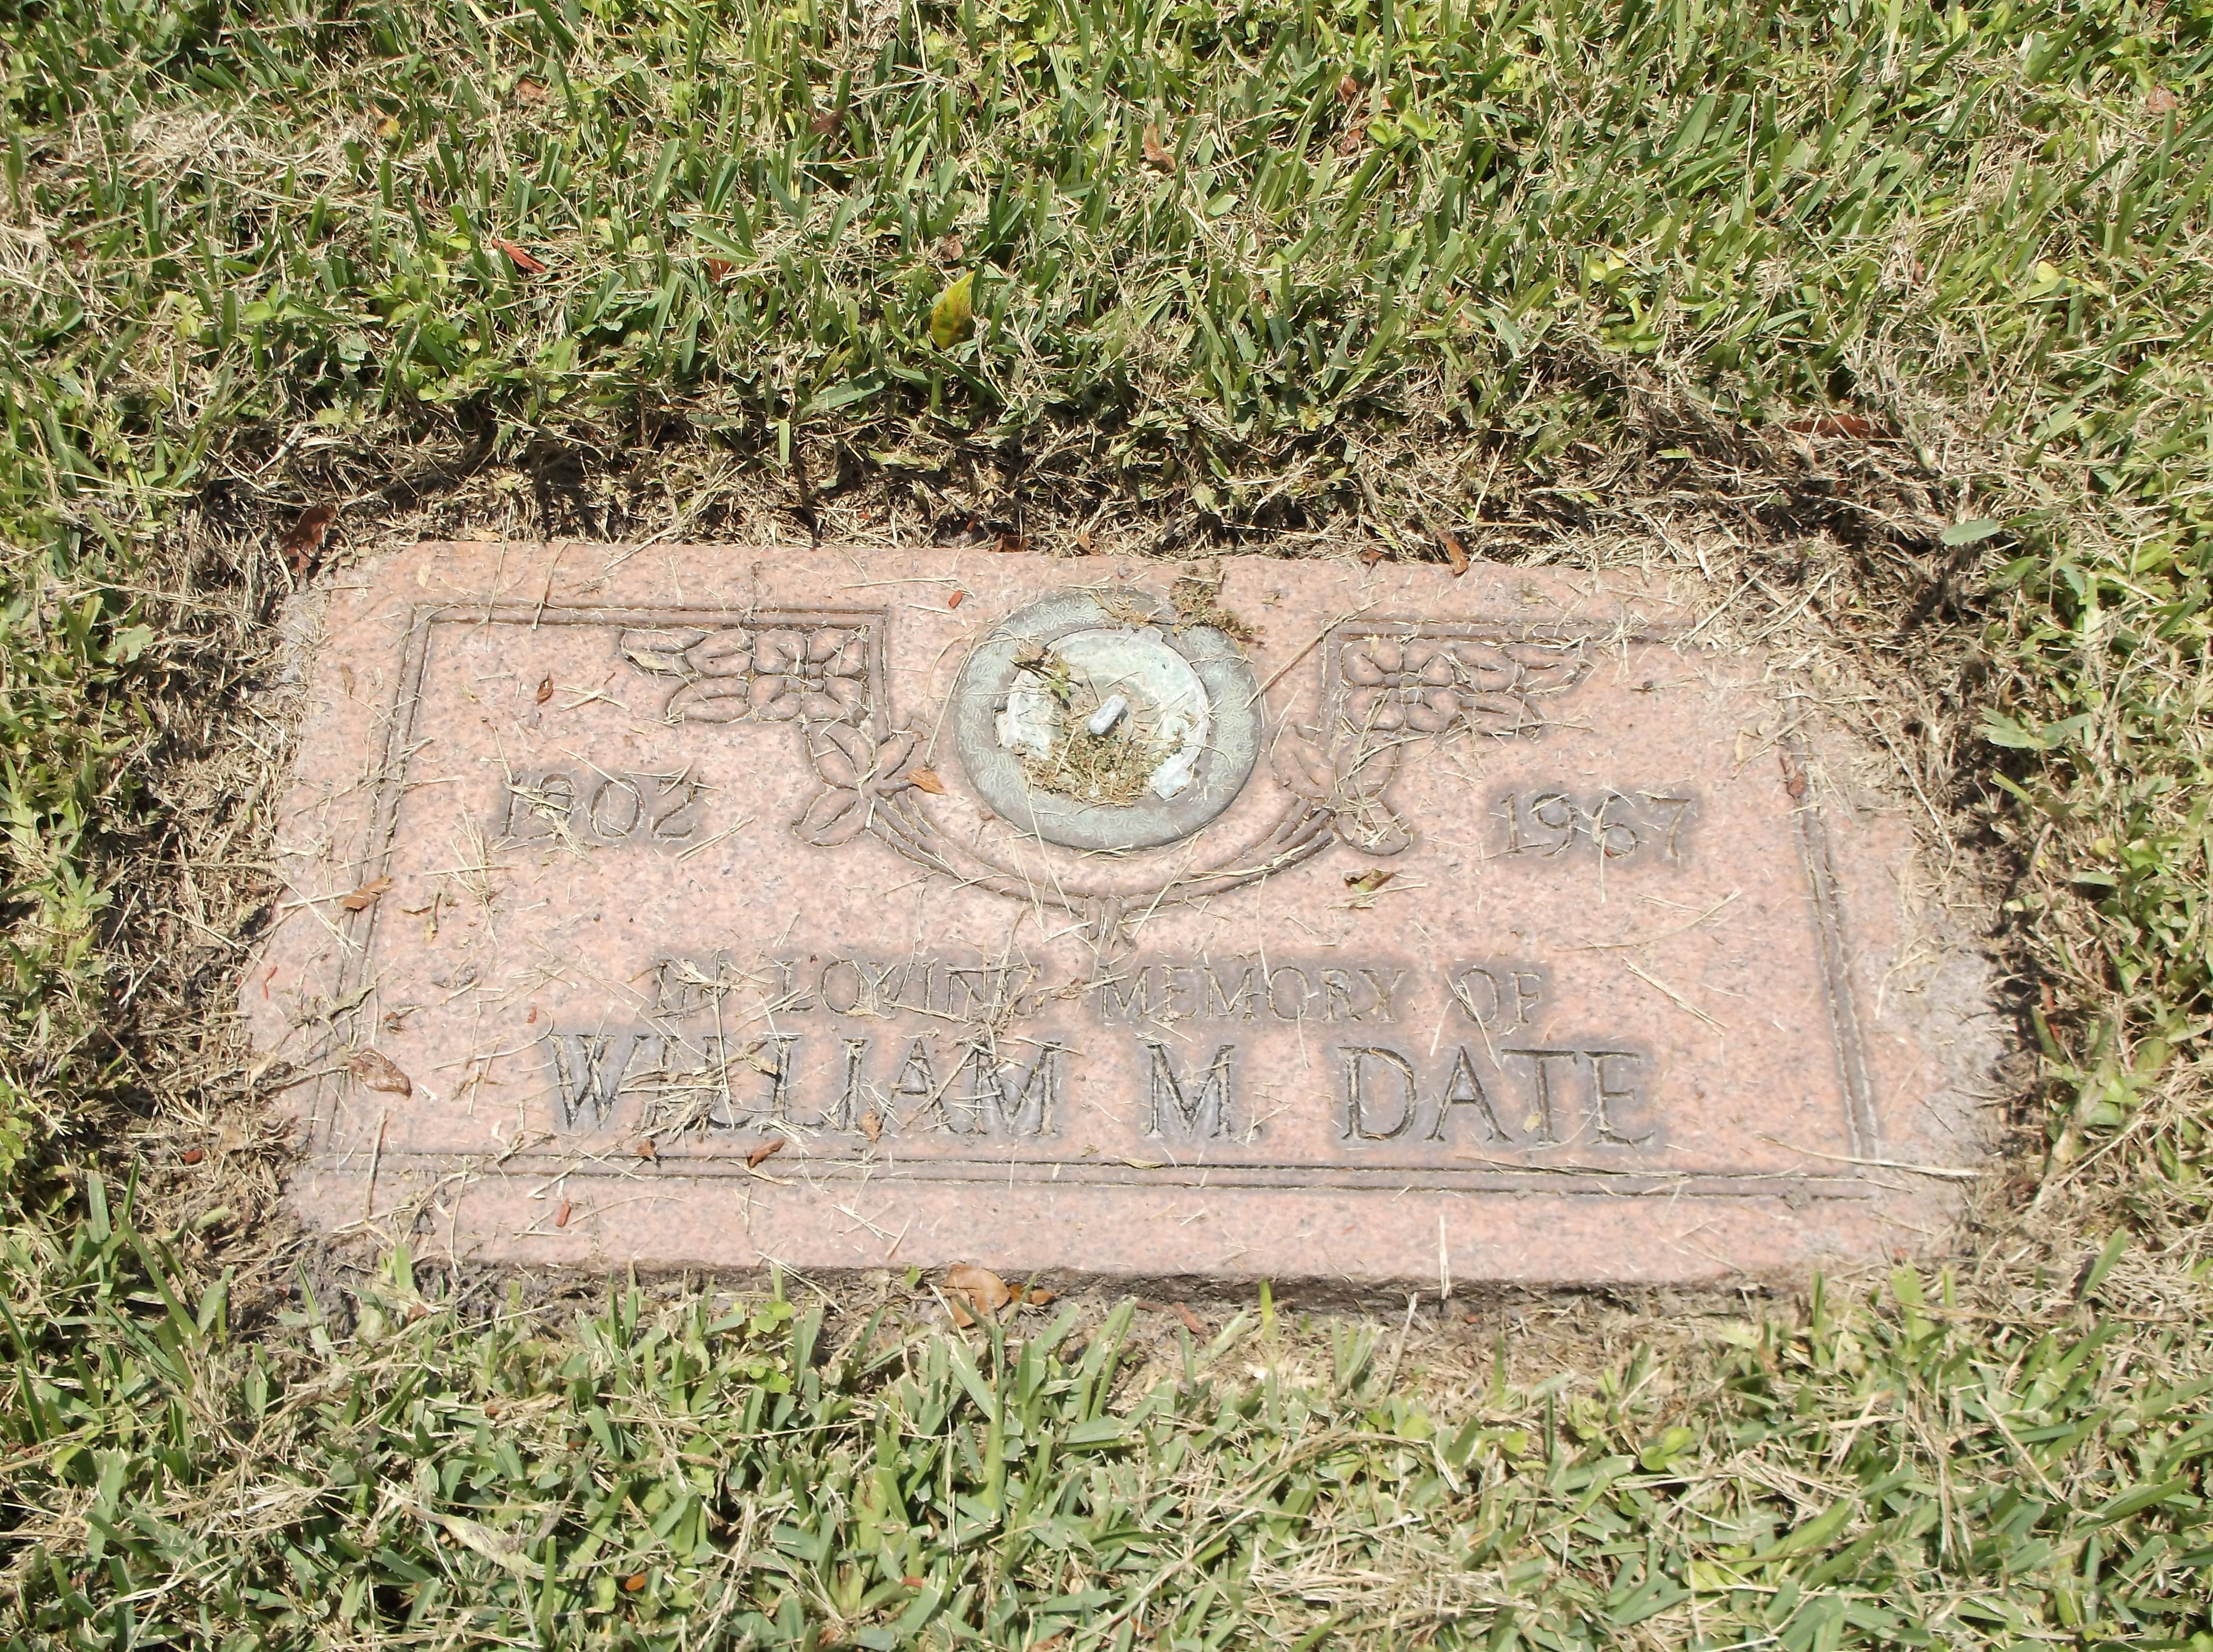 William M Date